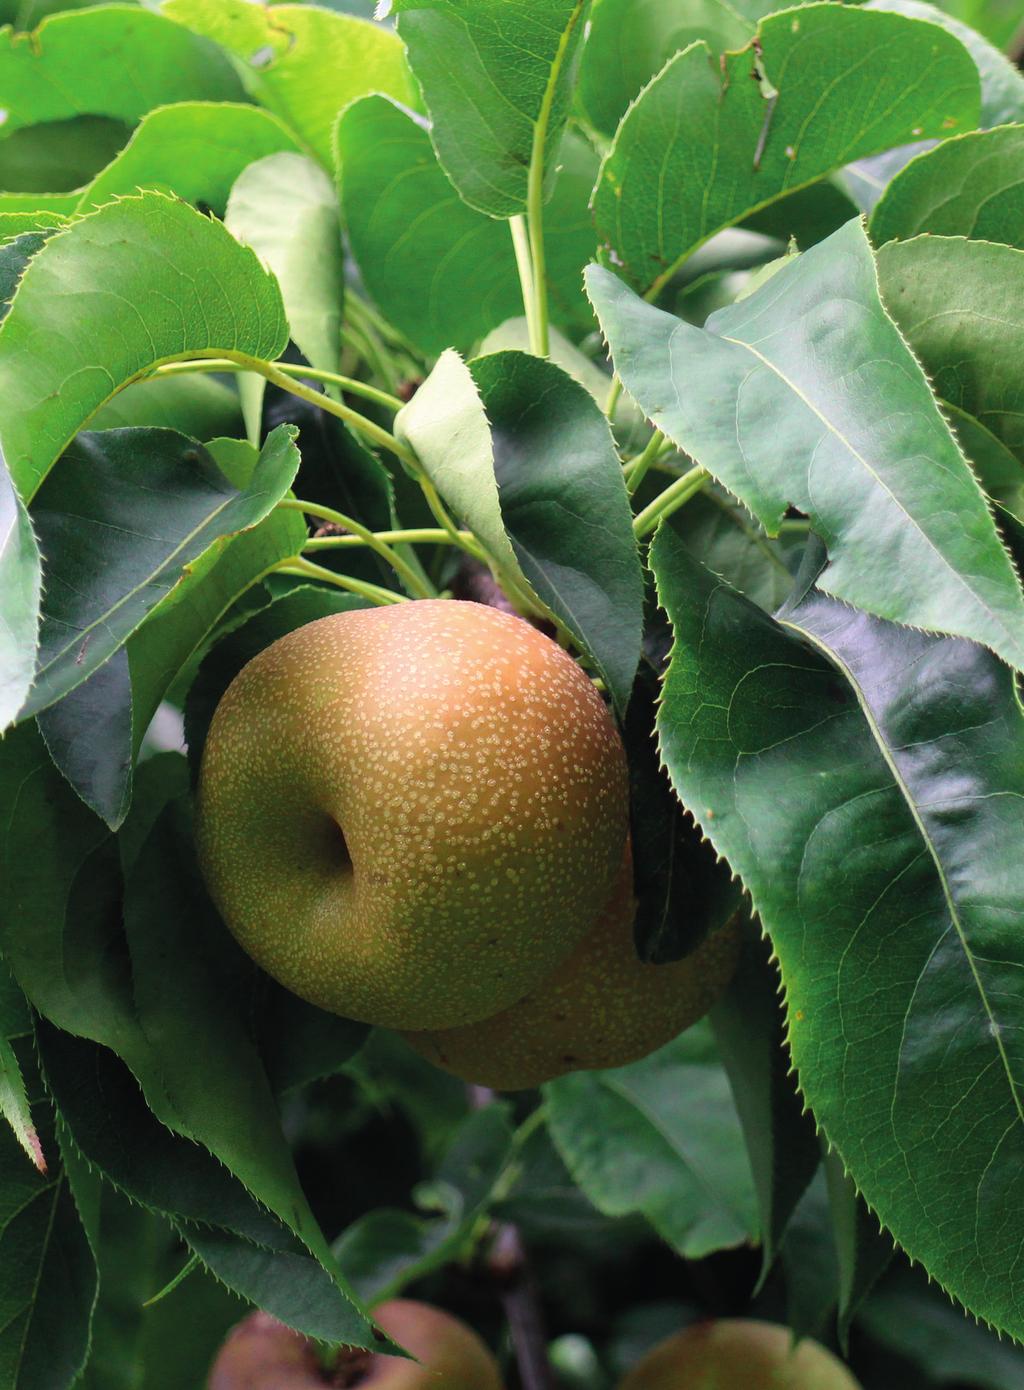 Frissáruként különleges megjelenésűek. A vizsgált fajták esetében a gyümölcs alakja lapított, gömbölyded, almára emlékeztető. A gyümölcsök mérete az alma fajták mérettartományához hasonló.